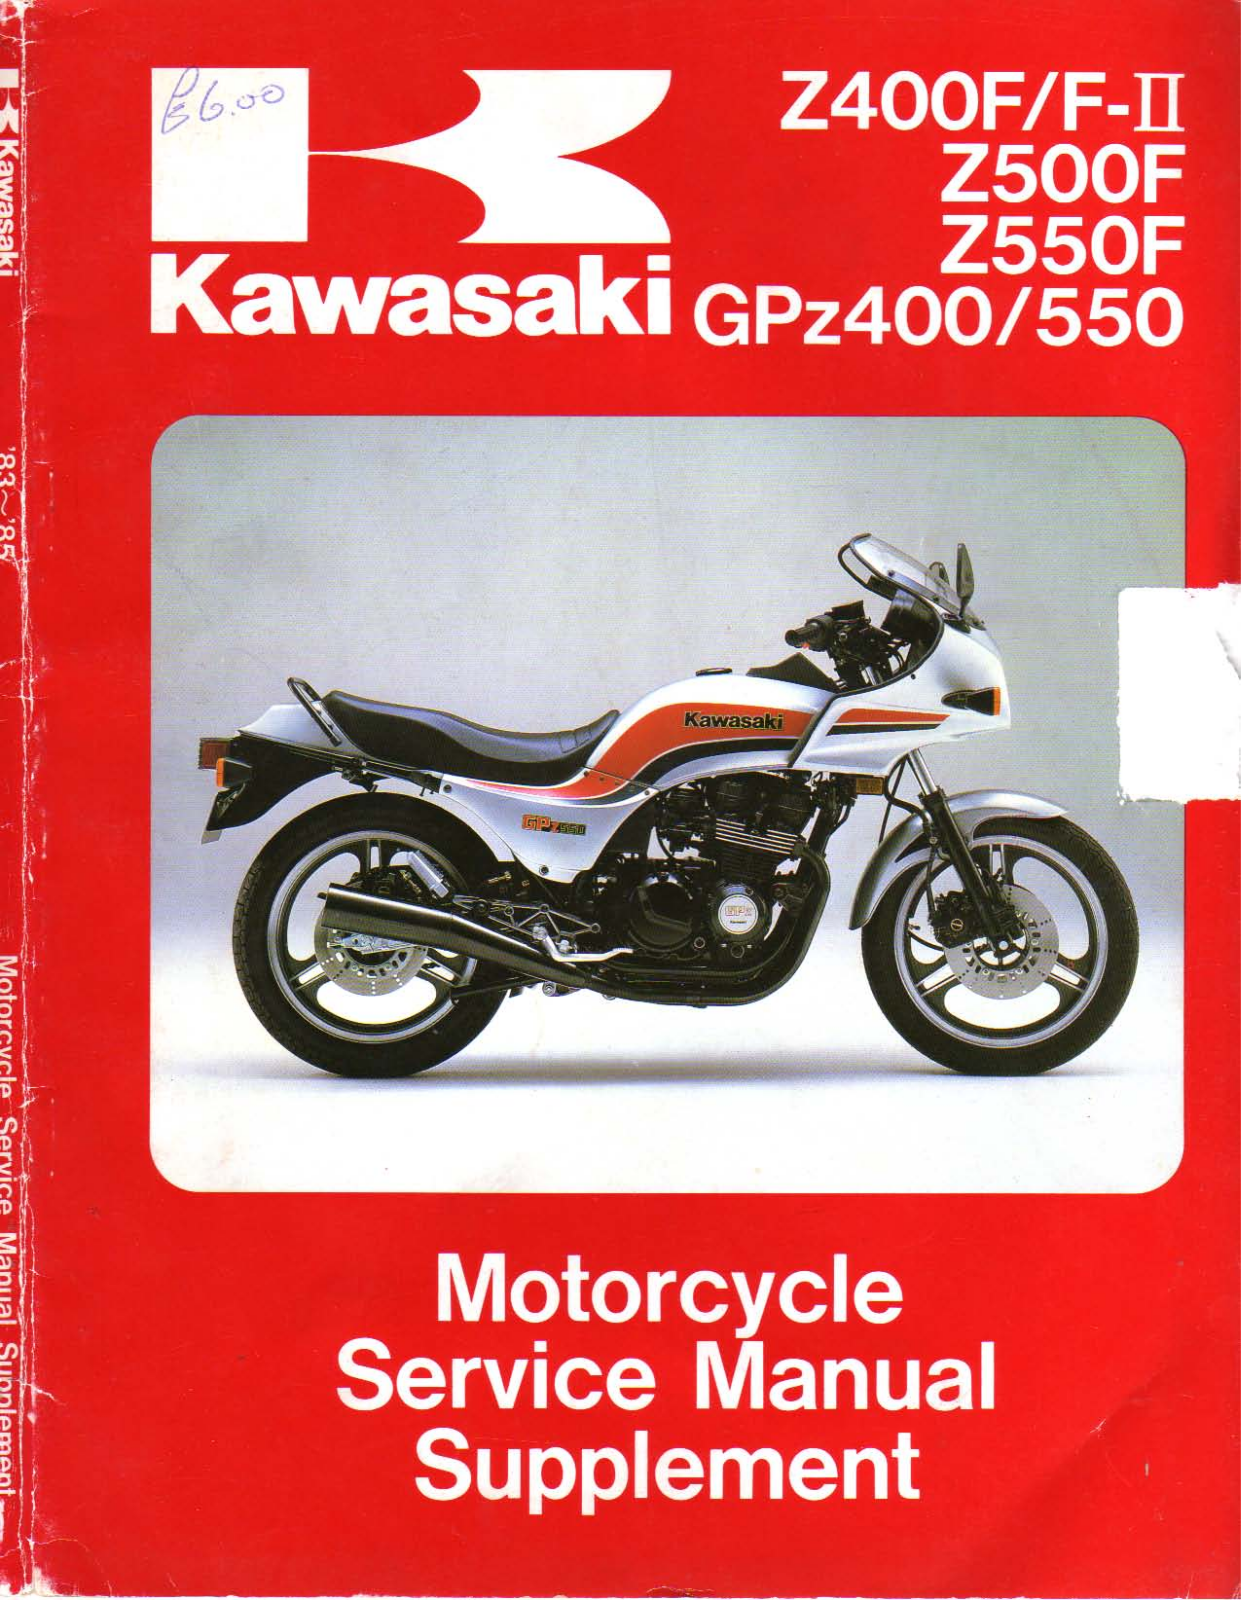 Kawasaki Z500F (1983-1985) User Manual